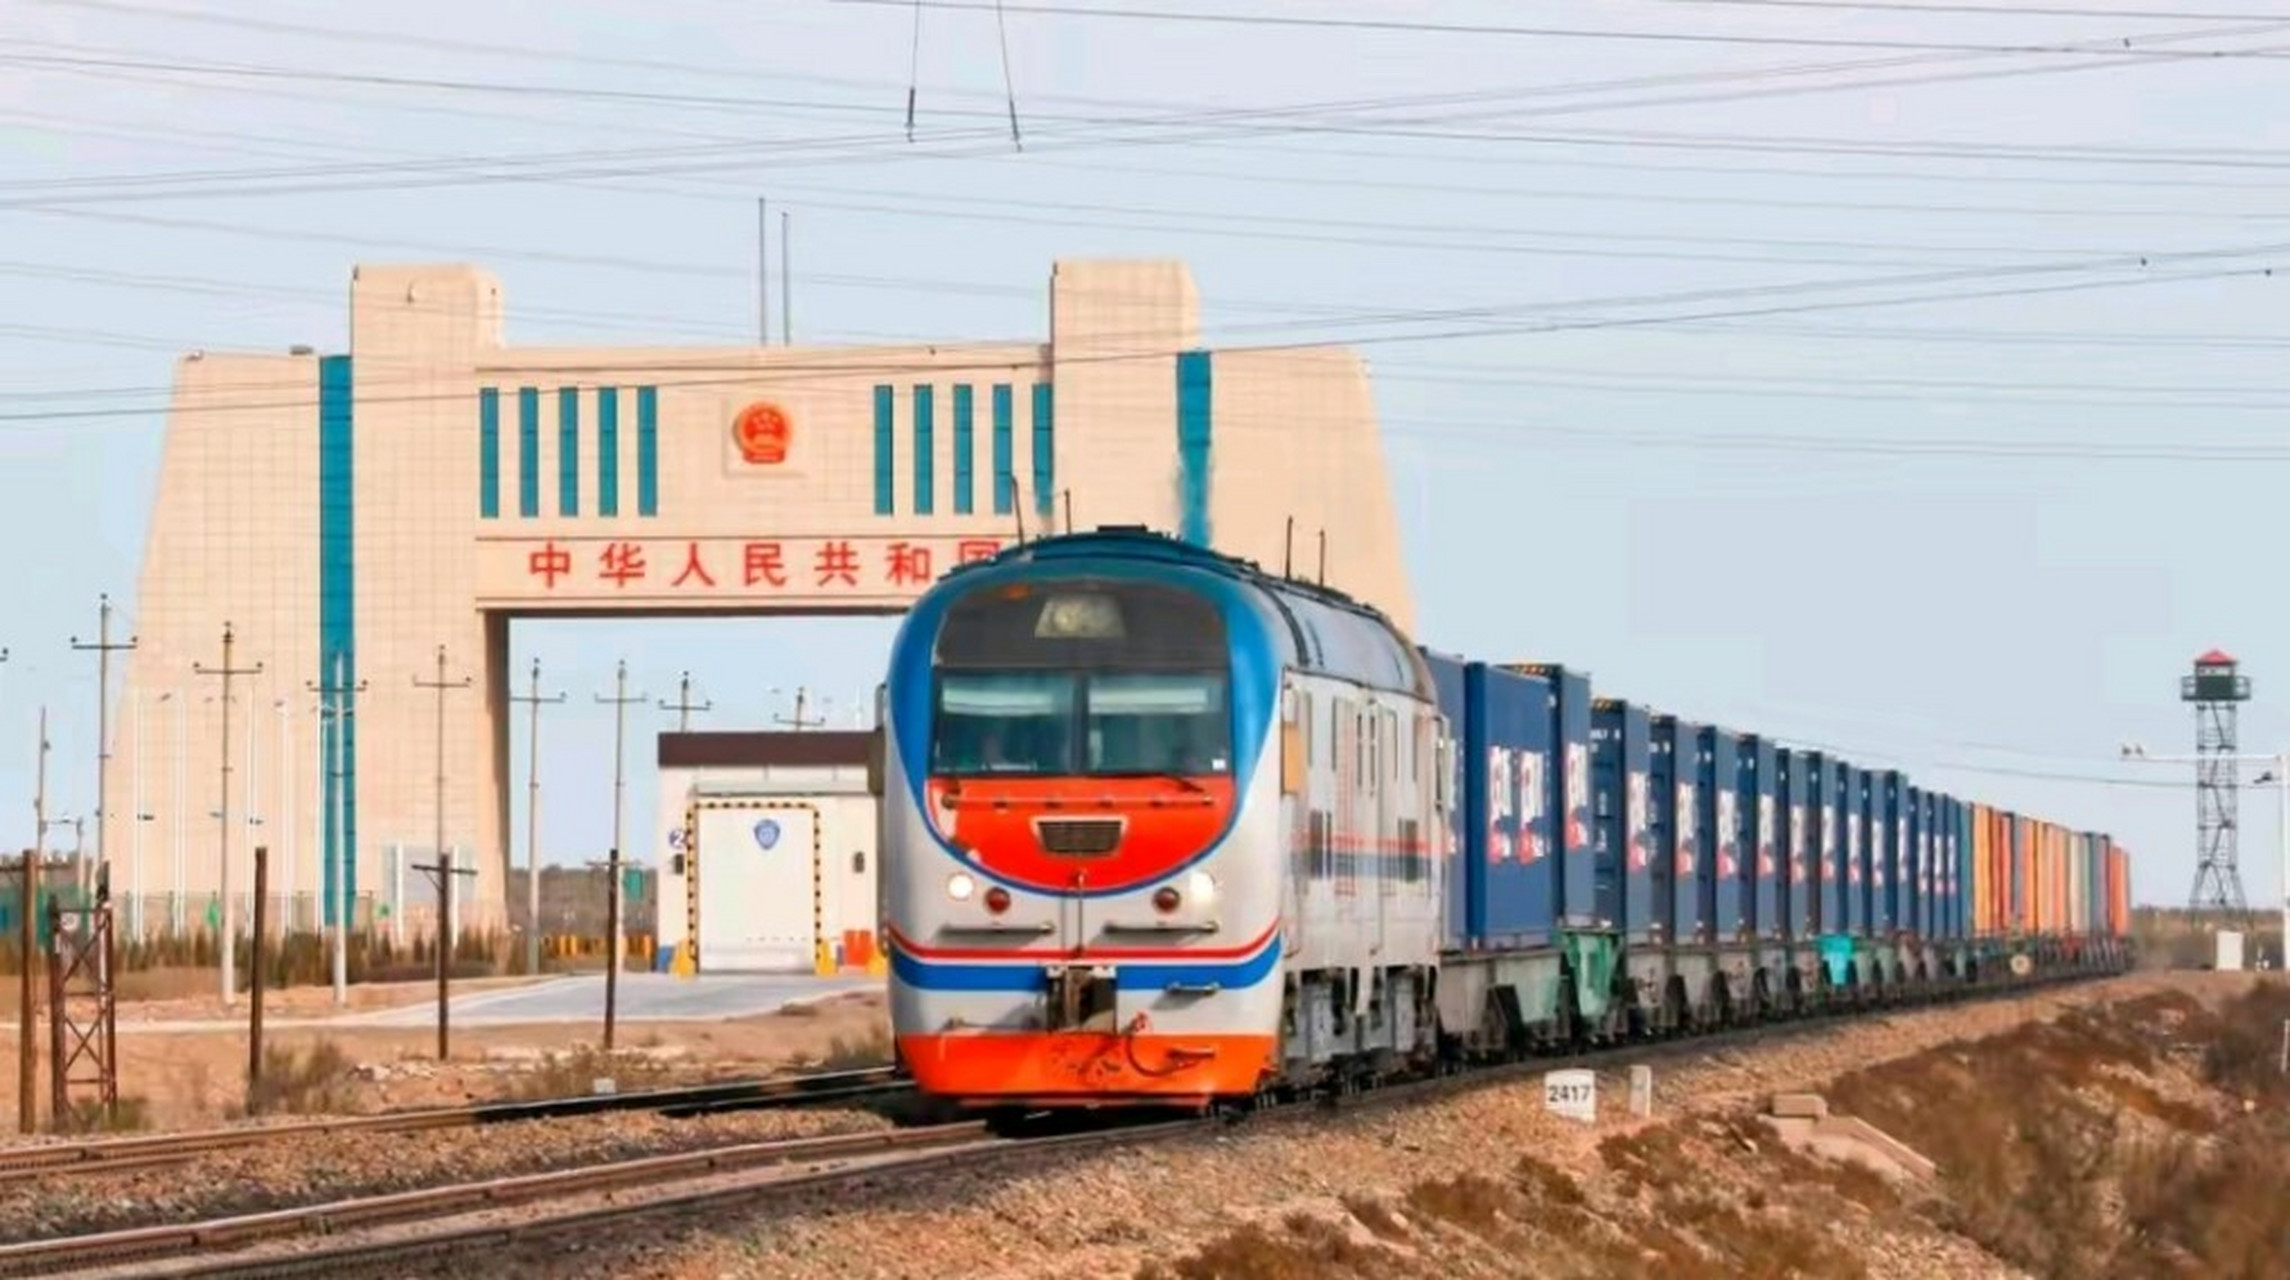 雅万高铁即将开通,缅甸也坐不住了,同意推进中缅铁路通道项目!